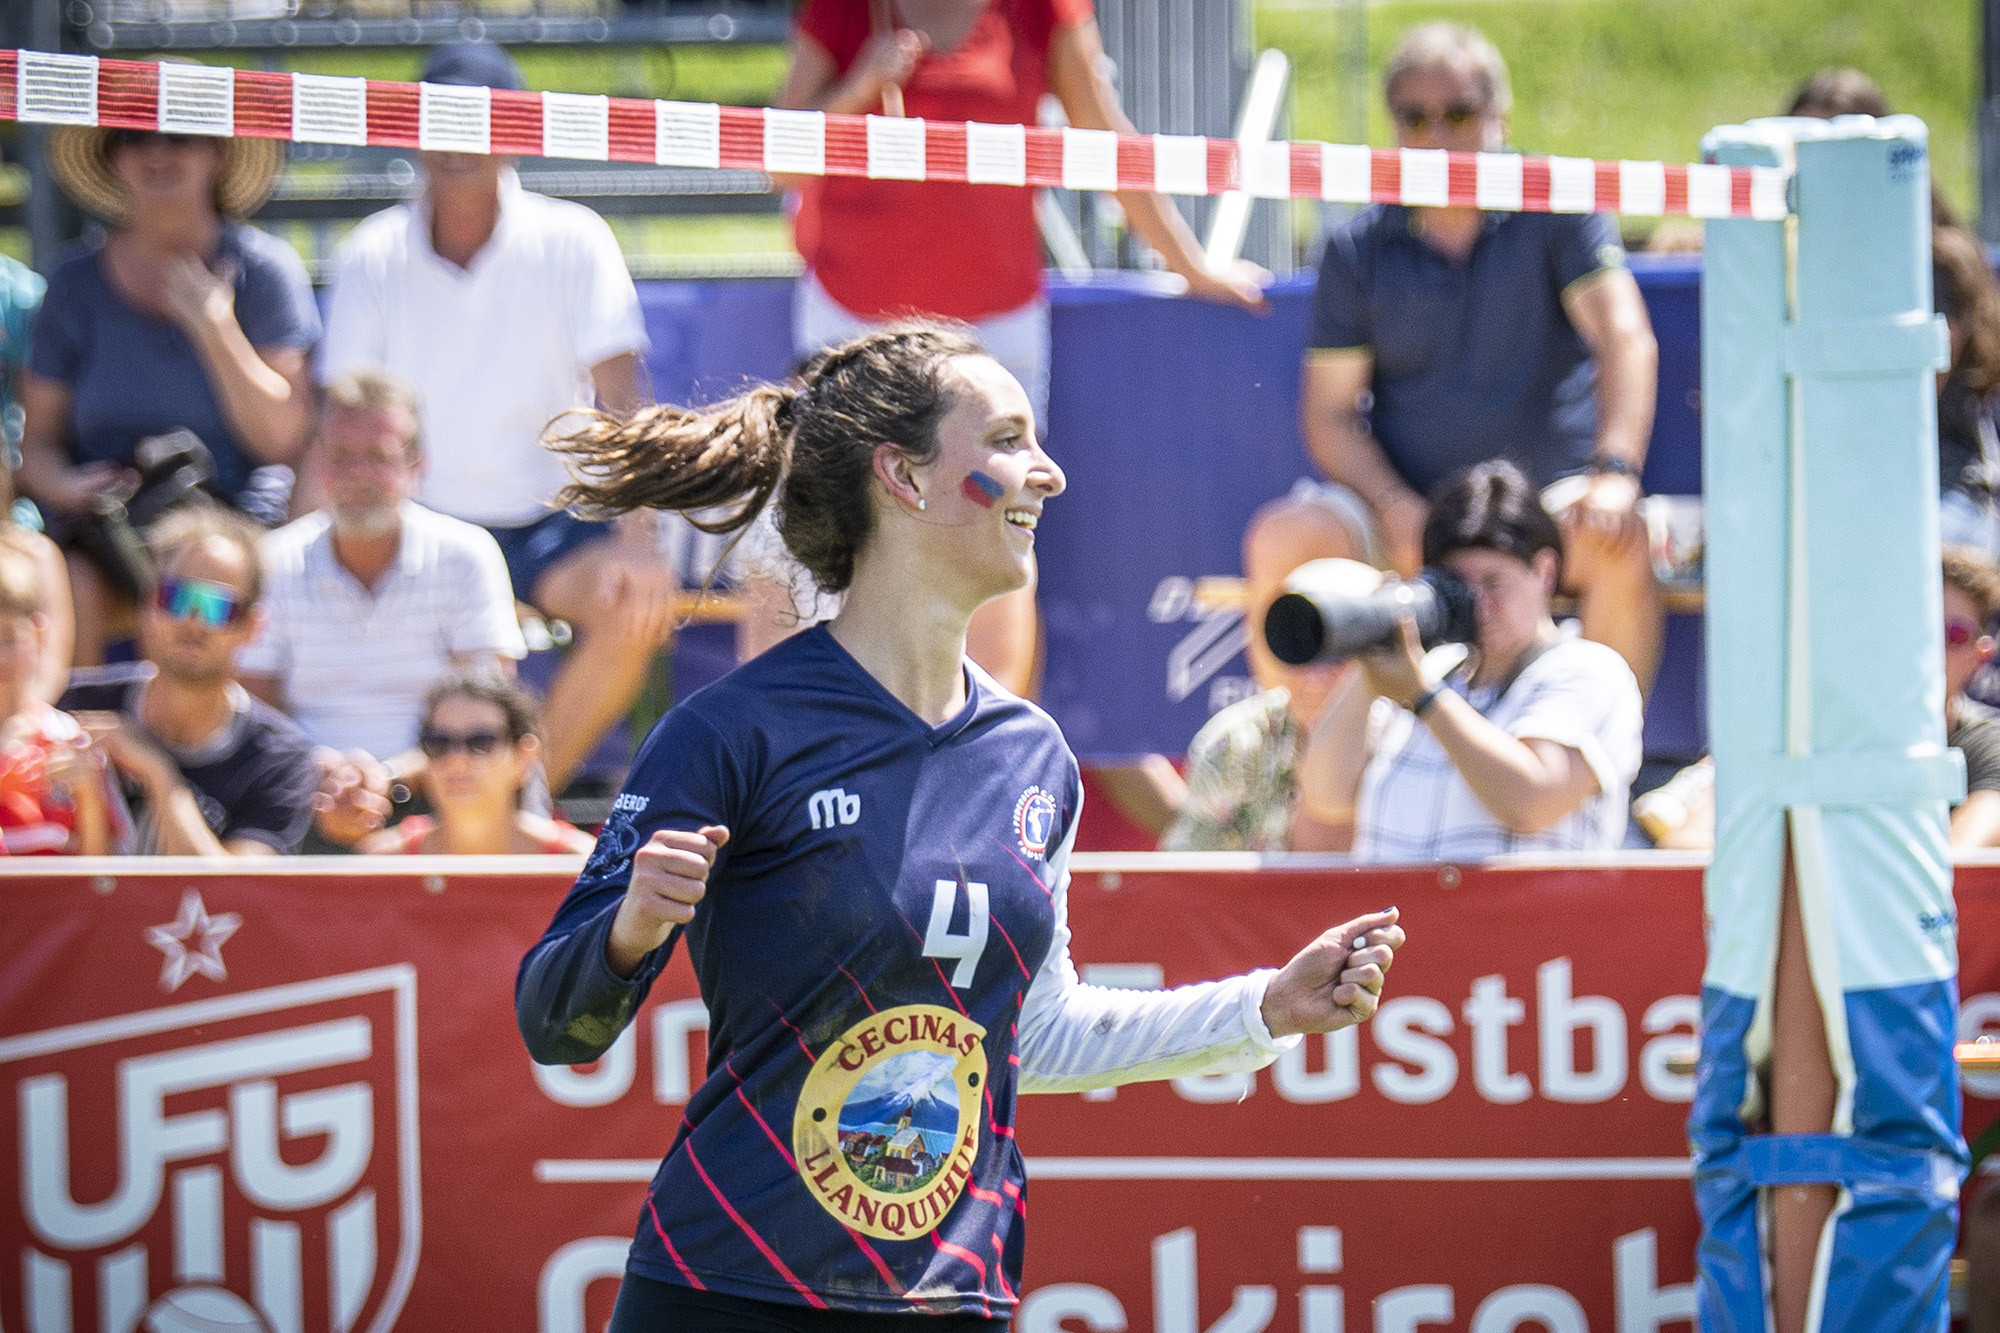 Chile overcome Serbia test to reach Women's Fistball World Championship semi-finals